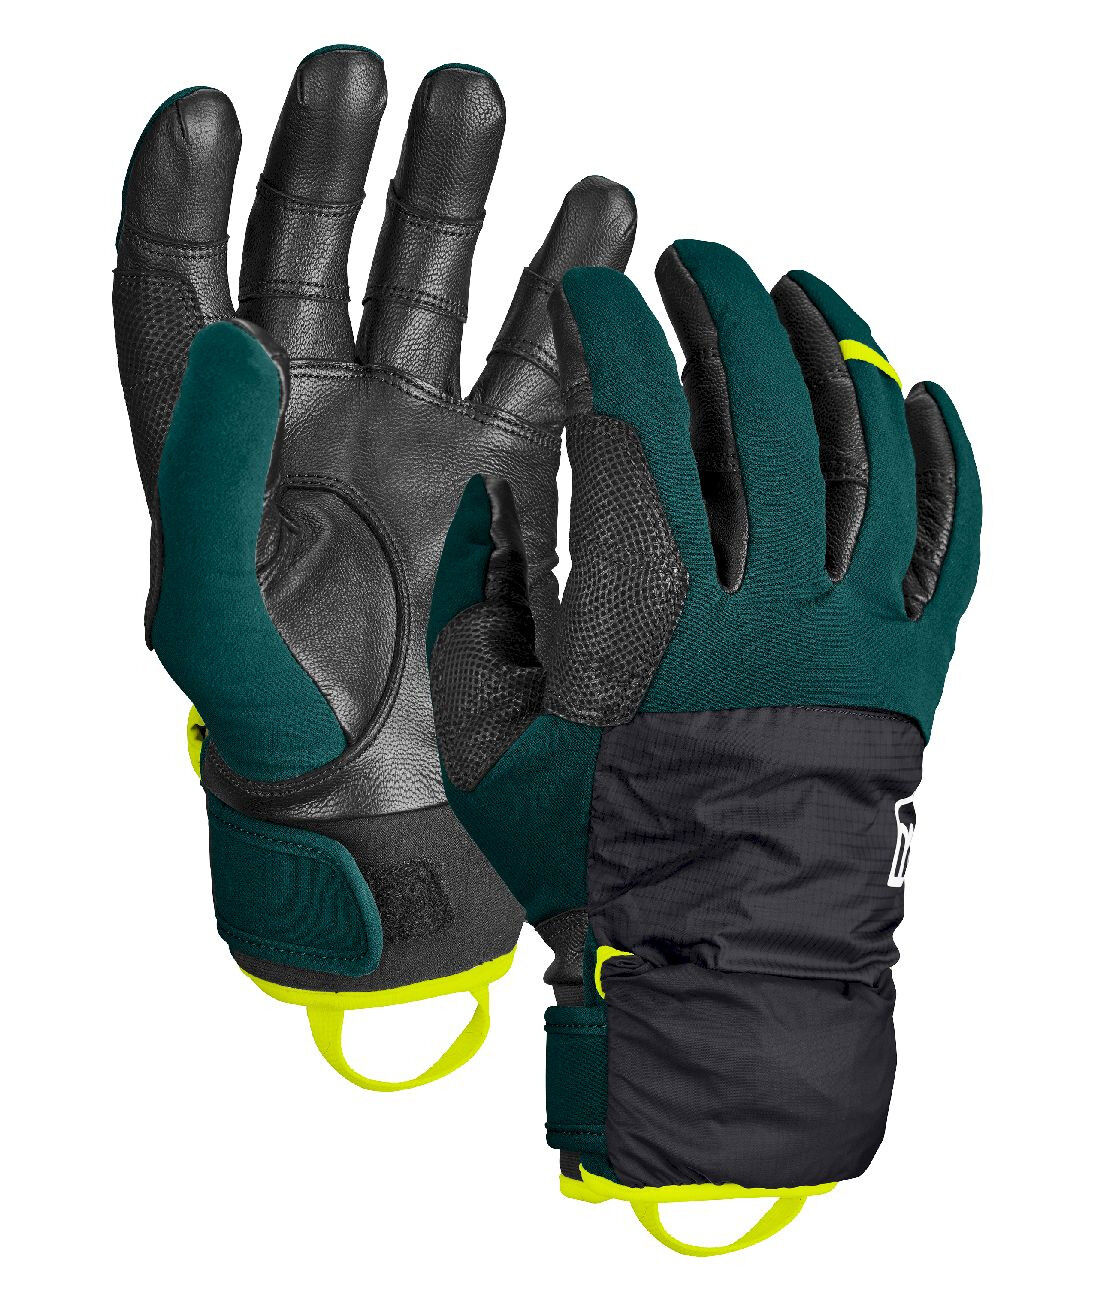 Ortovox Tour Pro Cover Glove - Ski gloves - Men's